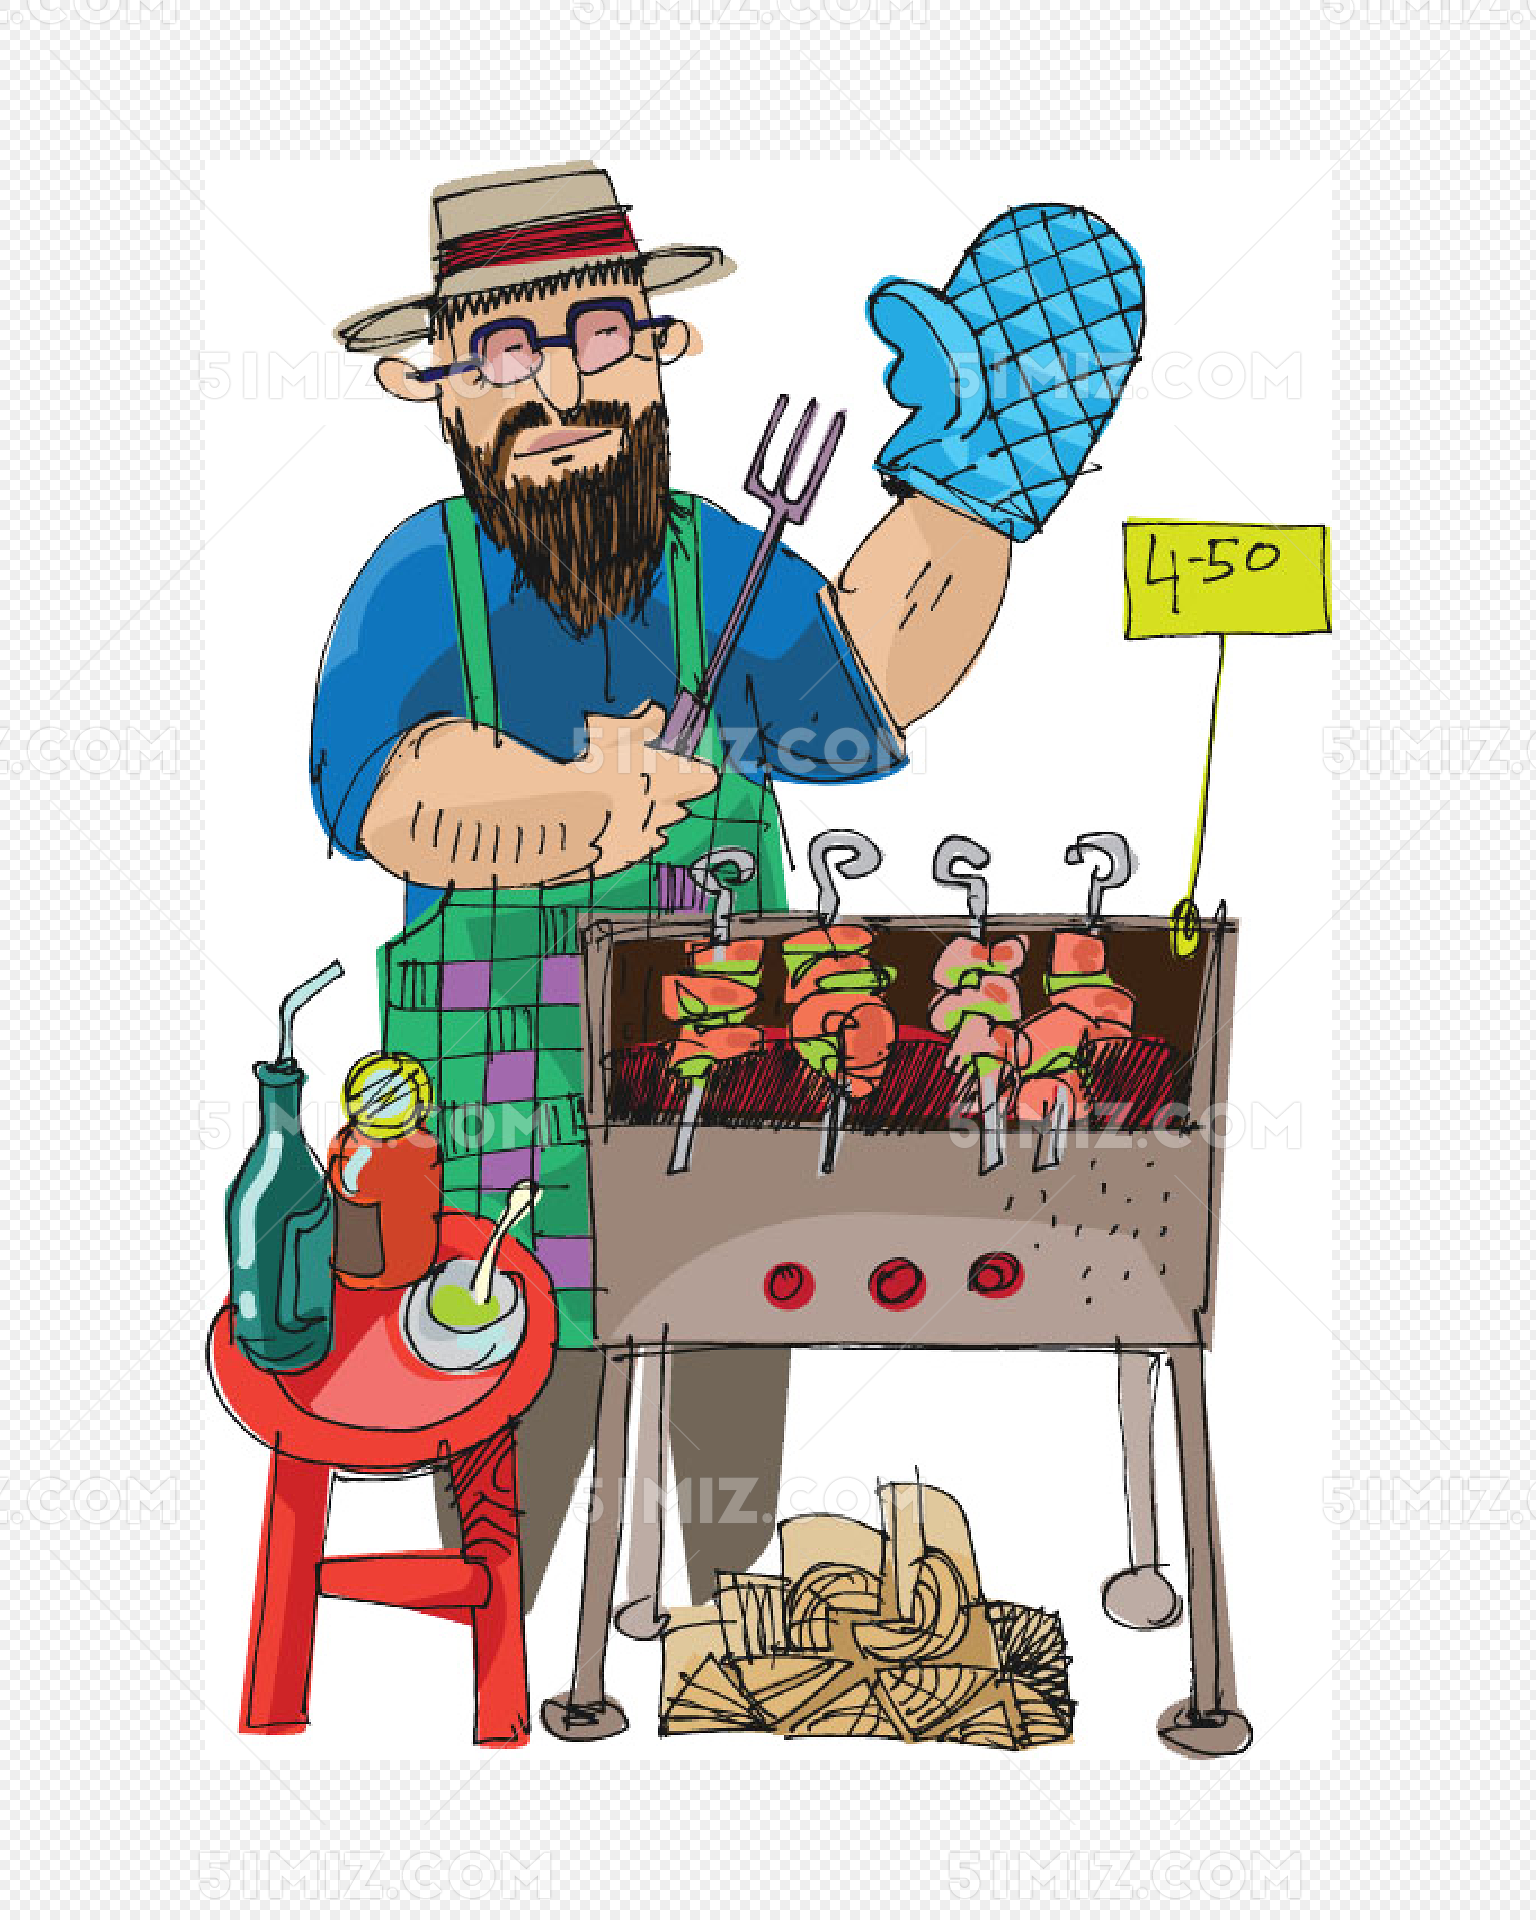 春季野餐燒烤小男孩卡通可愛插畫, 春季野餐燒烤小男孩卡通可愛插畫, 免費下載, 帶圖片的海報素材圖案，PSD和PNG圖片免費下載